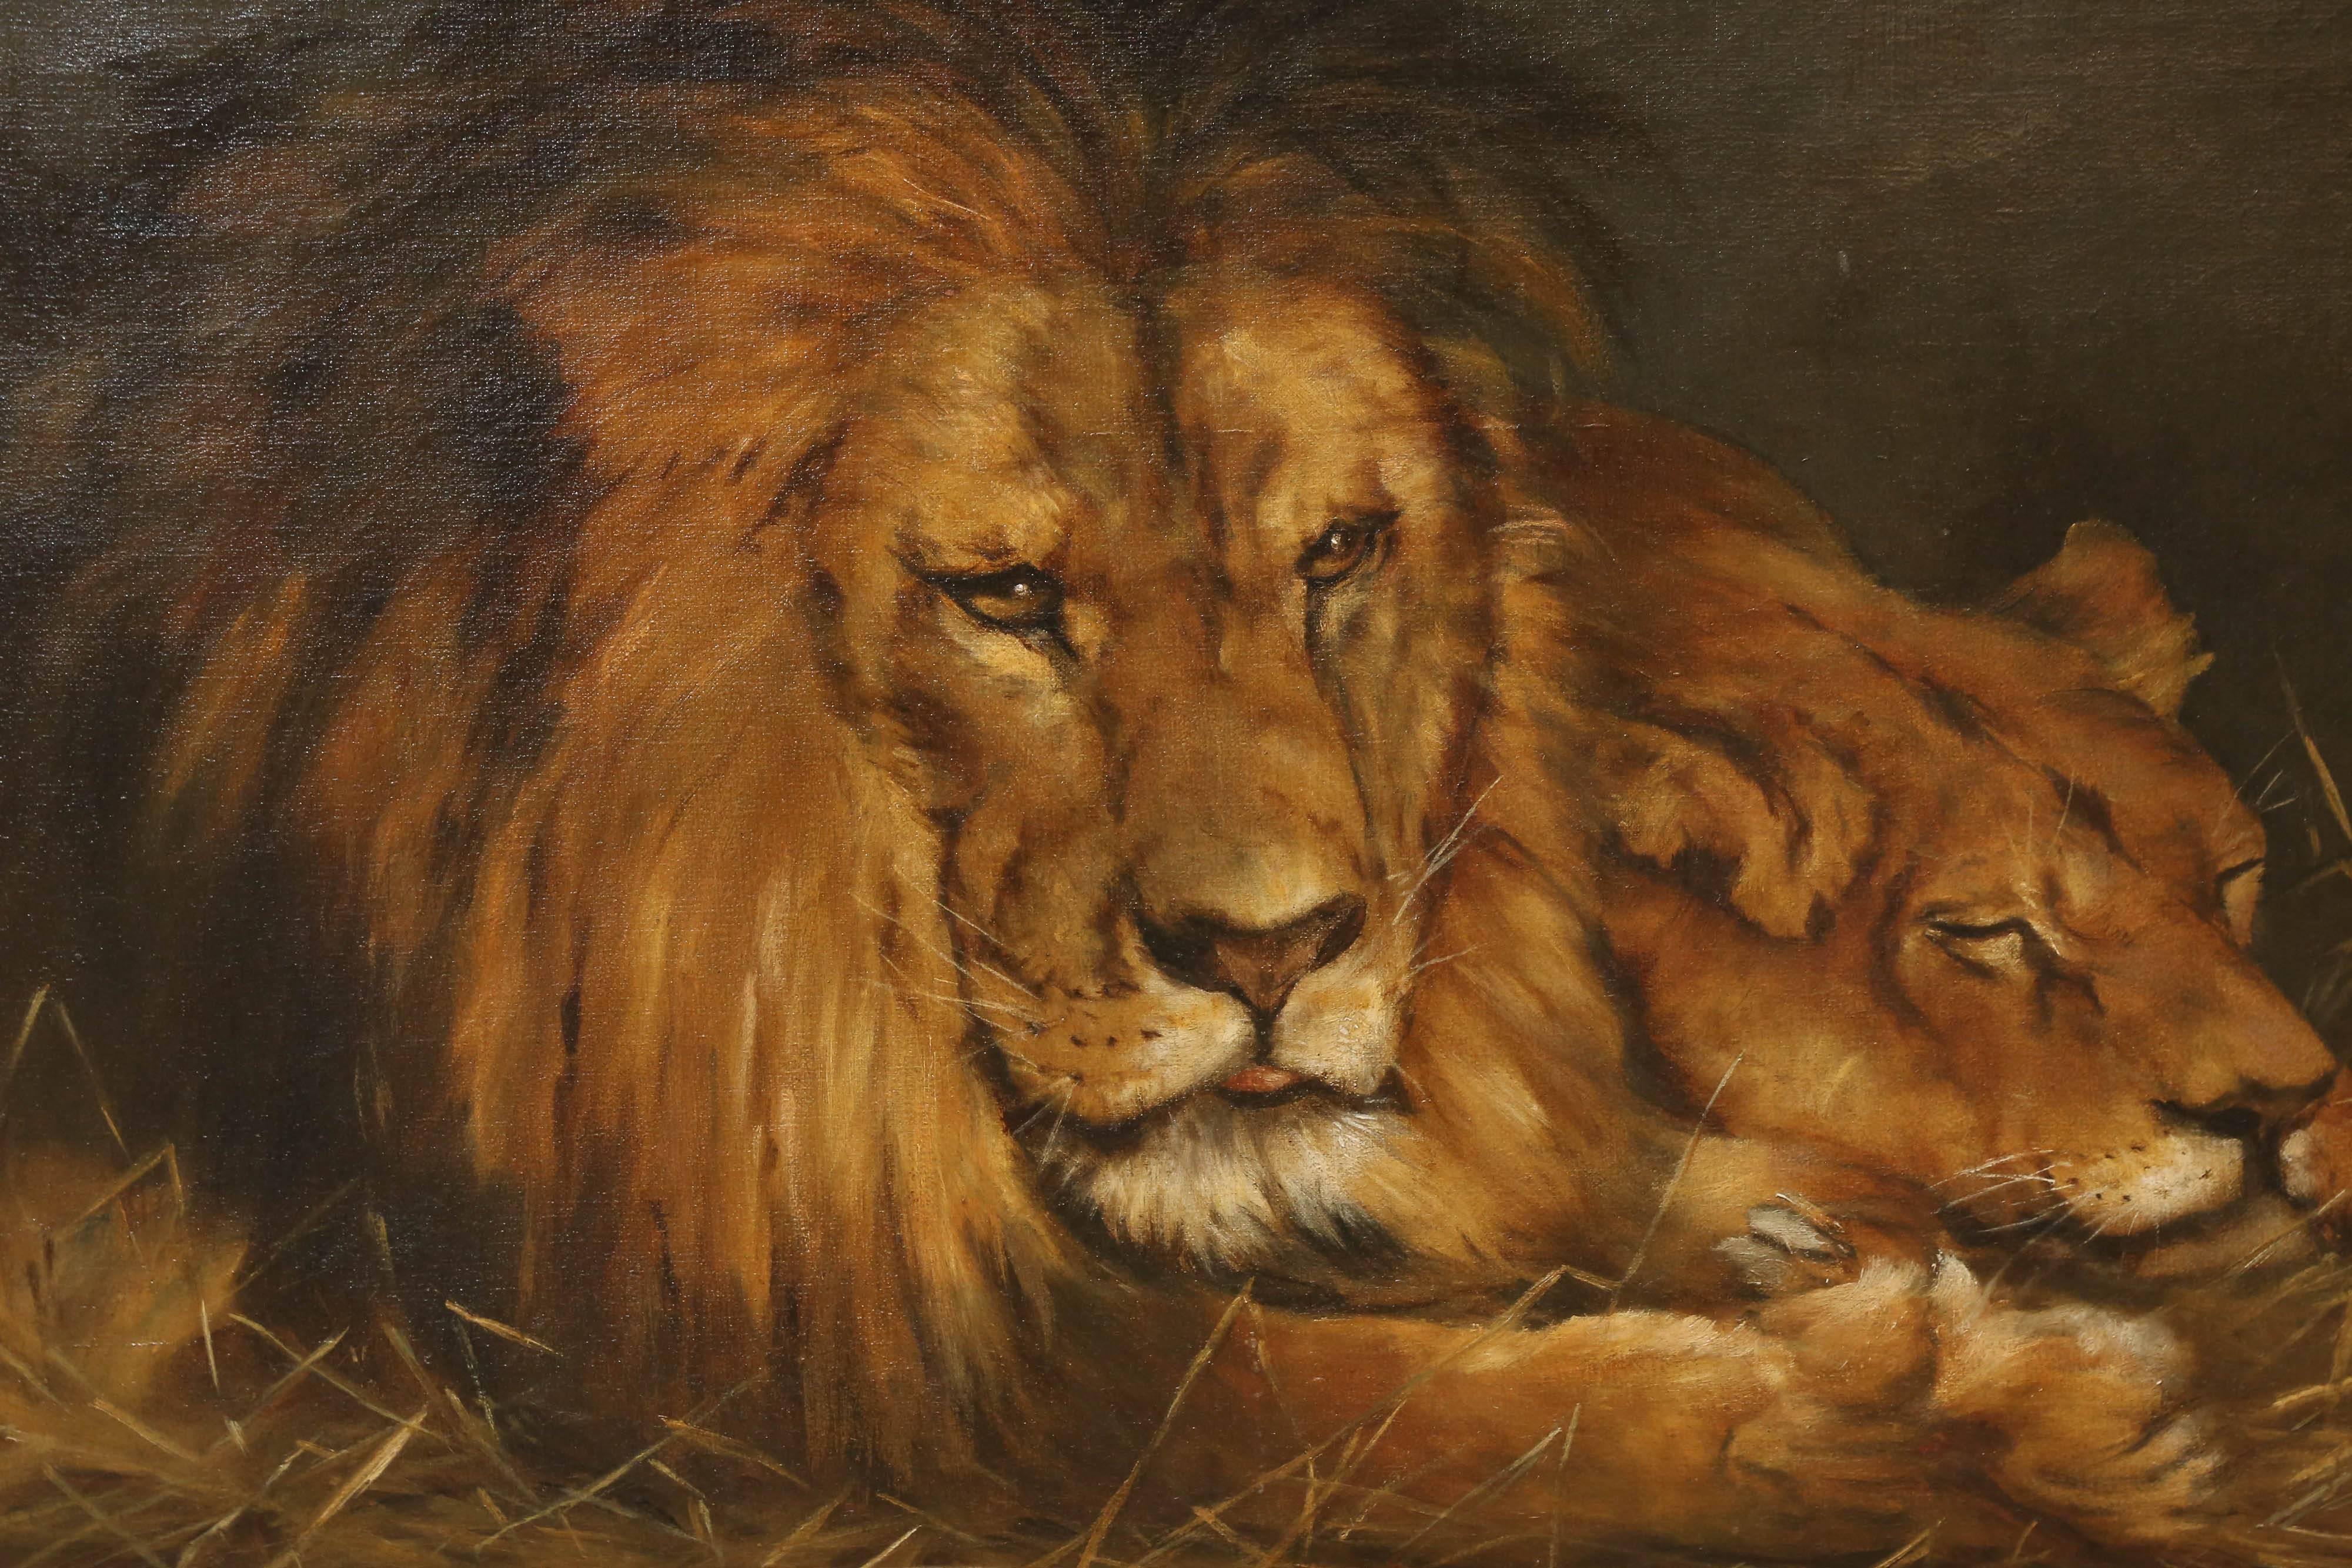 Vastagh, Geza (1866-1919)

Artiste hongrois bien répertorié. Non signé 22 x 28. Huile sur toile, représentant un lion et une lionne, l'un de ses sujets favoris. Rapport d'expertise sur la main, vers 1900

Mesures : La taille globale est de 31 x